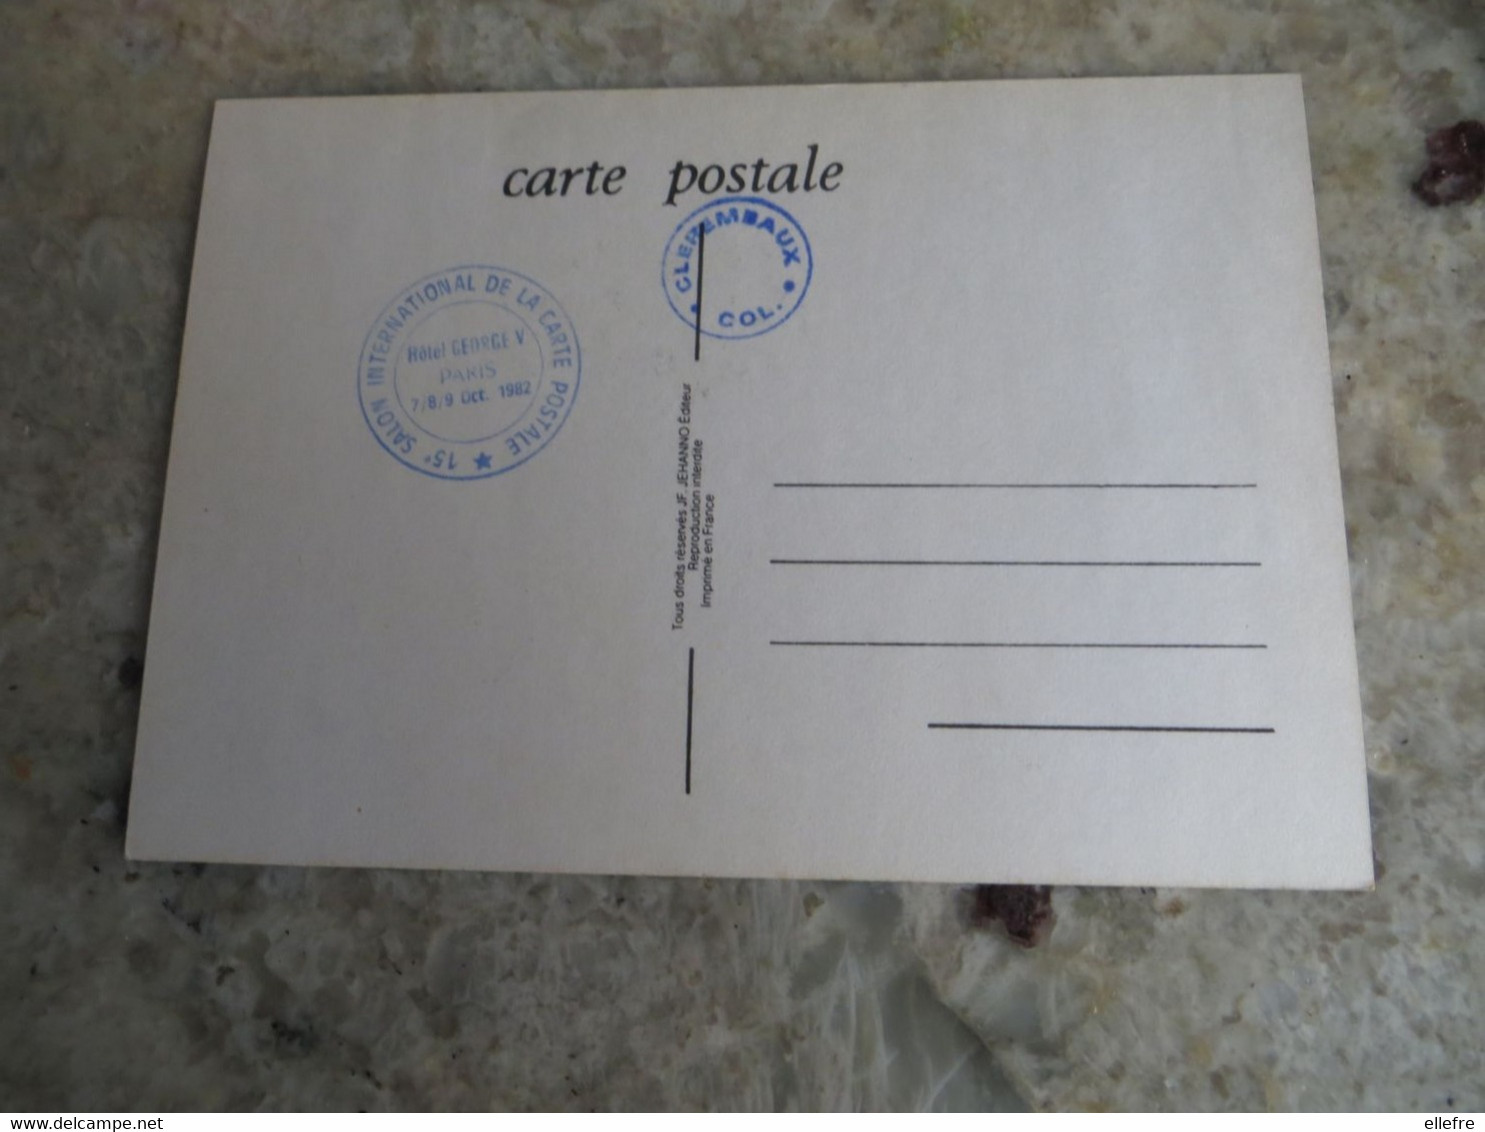 CPM Paris Hôtel Georges V - 15 ème Salon International De La Carte Postale - 1982 Illustrateur Jeudy - Bourses & Salons De Collections